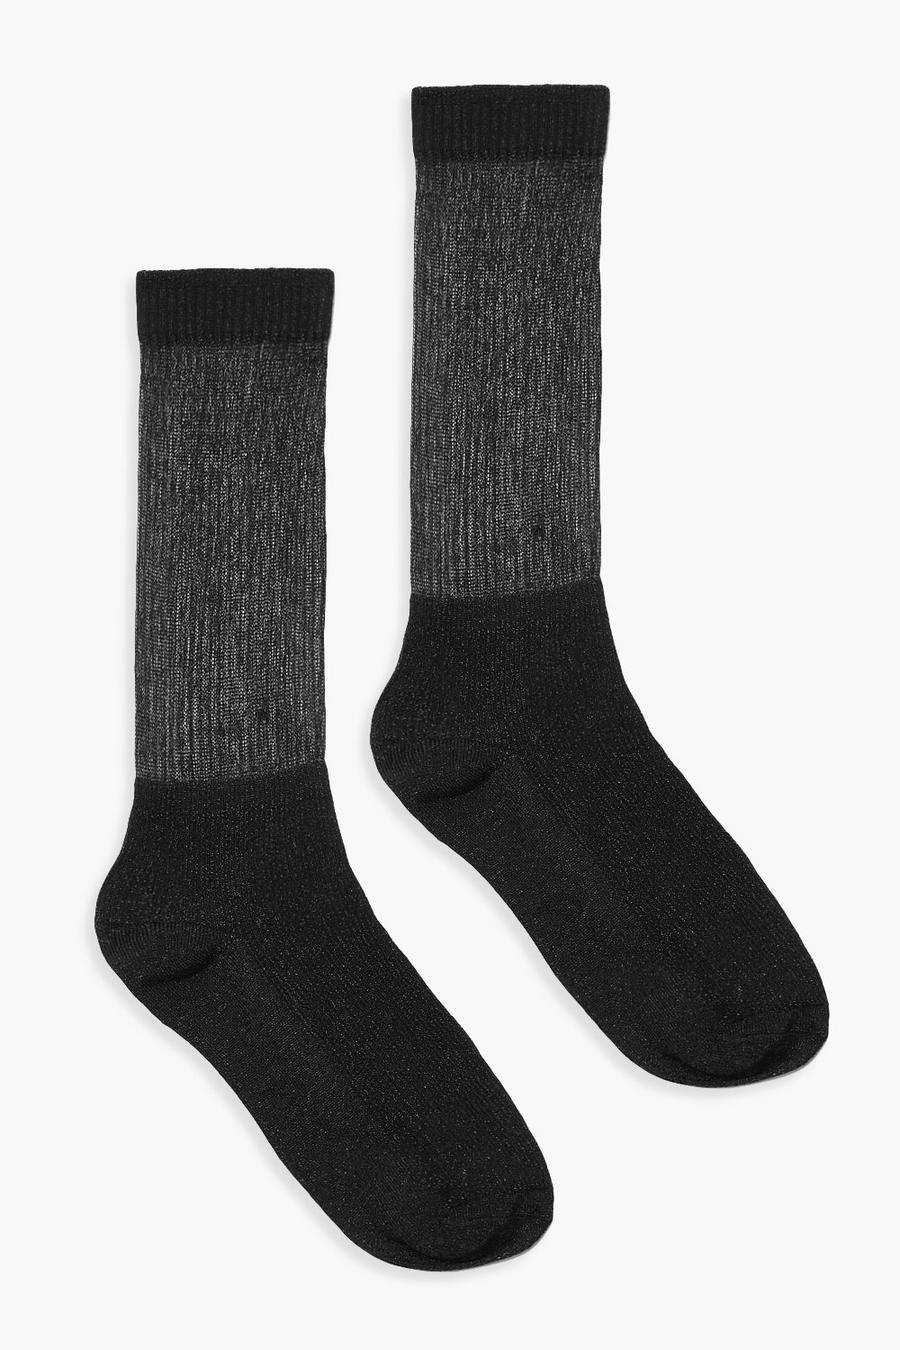 Black Over The Knee Socks 2 Pack image number 1